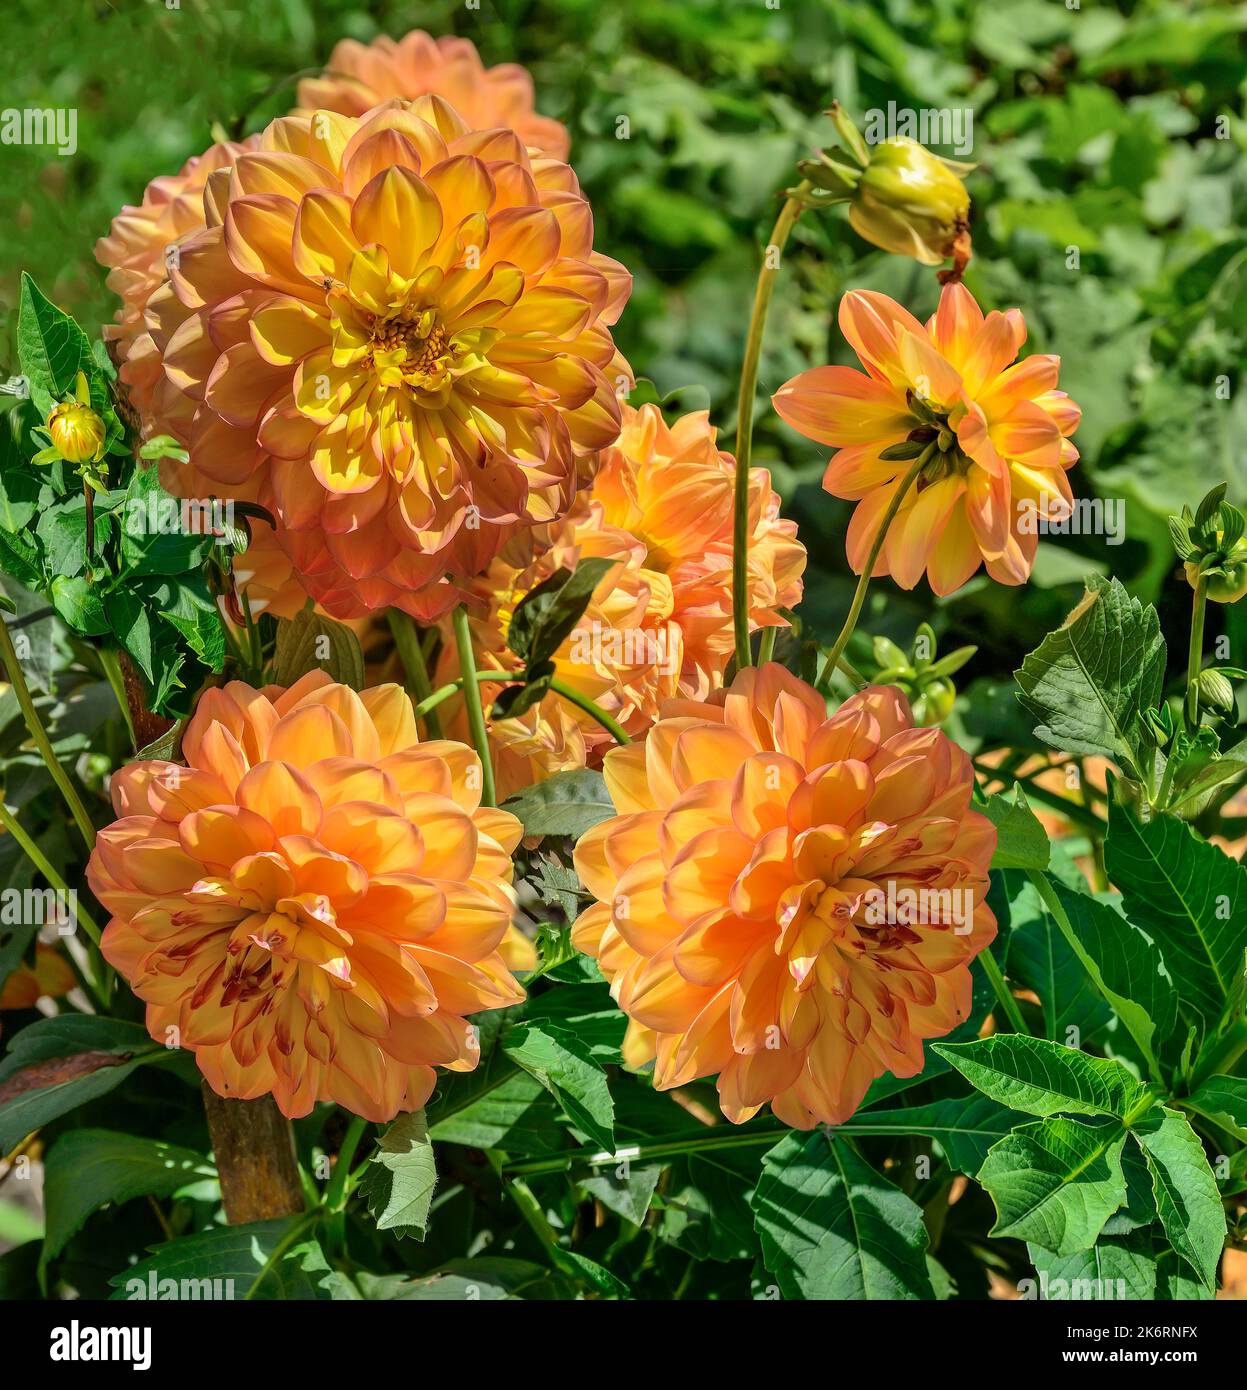 Helle goldene Dahlien Köpfe Sorte Sunny Boy im Garten. Schöne gelb-orange Blütenblätter mit roten Rändern von Doppelblüten. Kugelige Dahlie blüht als s Stockfoto